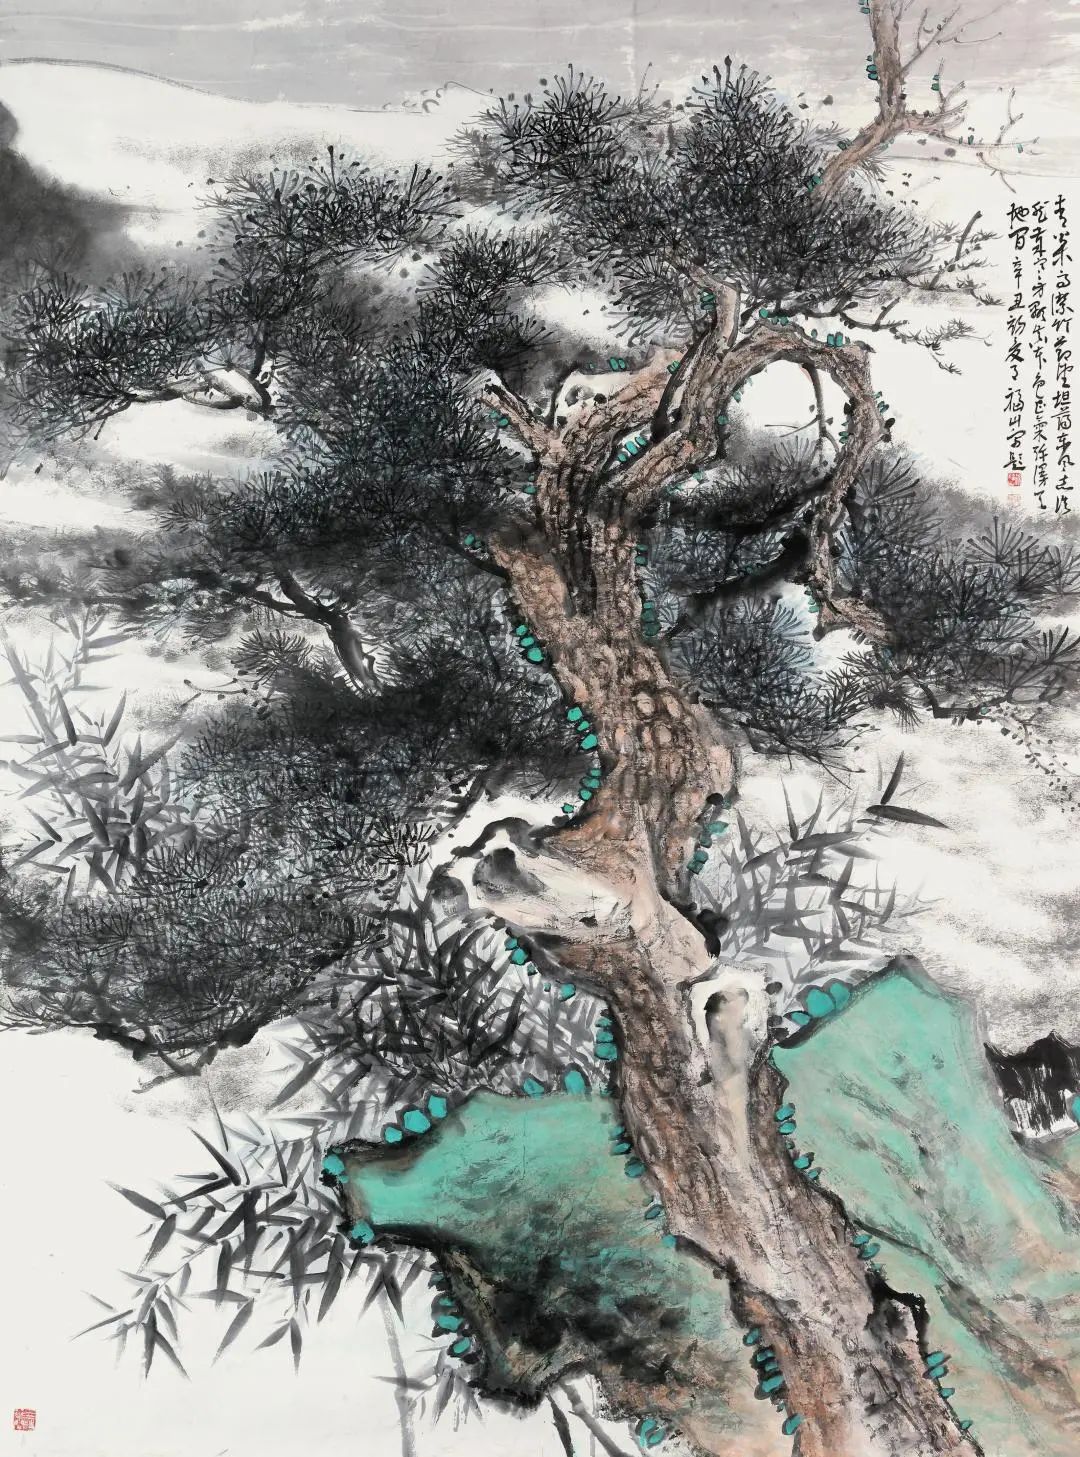 从“大写意”出发 ——著名画家徐福山谈写意绘画的范式转换